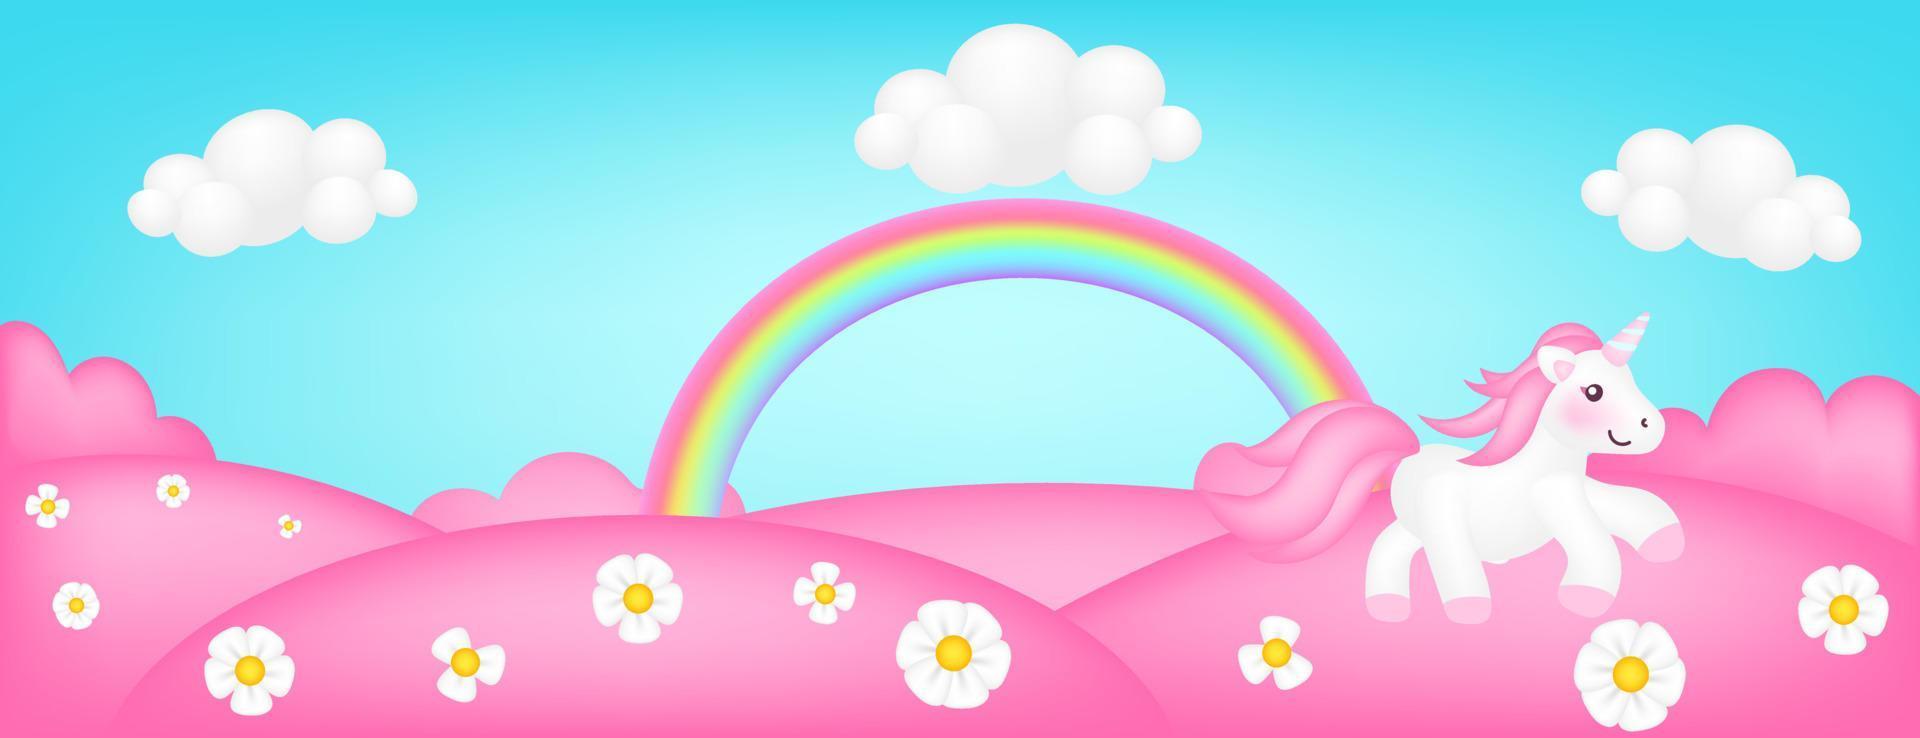 ilustración de vector de panorama de pradera. paisaje brillante de fondo rosa para niños del valle. Escena linda y colorida con árboles de caramelo de fantasía, flores, cielo azul, arco iris, nubes de unicornio para sitios infantiles.